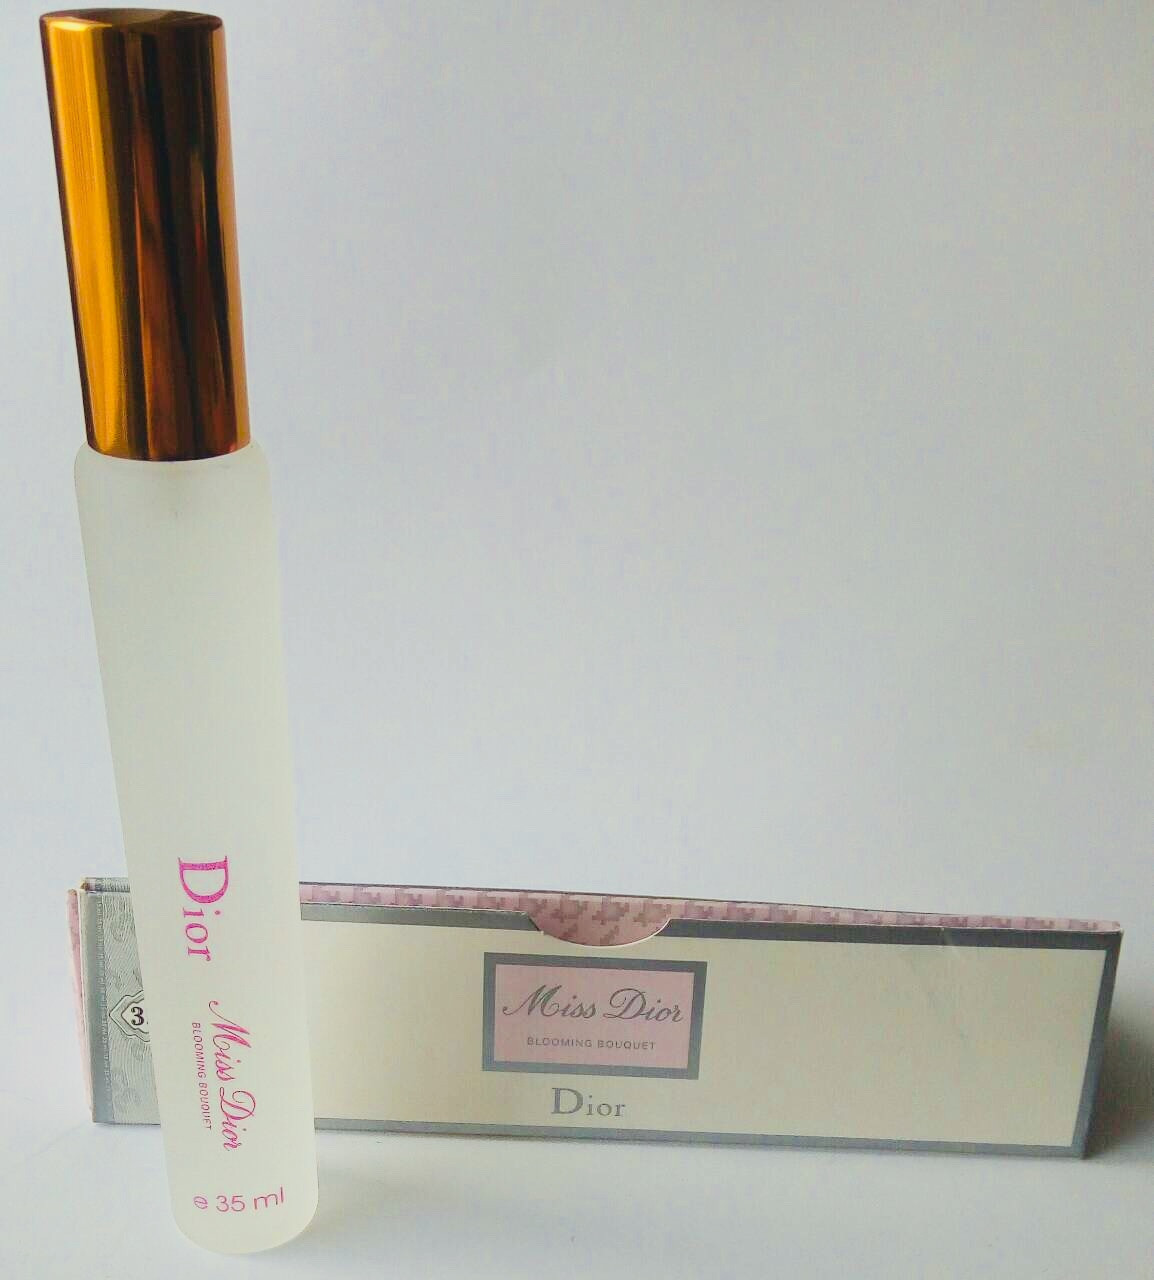 Dior Miss Dior Blooming Bouquet для женщин (35 ml) дорожный флакон, пробник-ручка (копия)